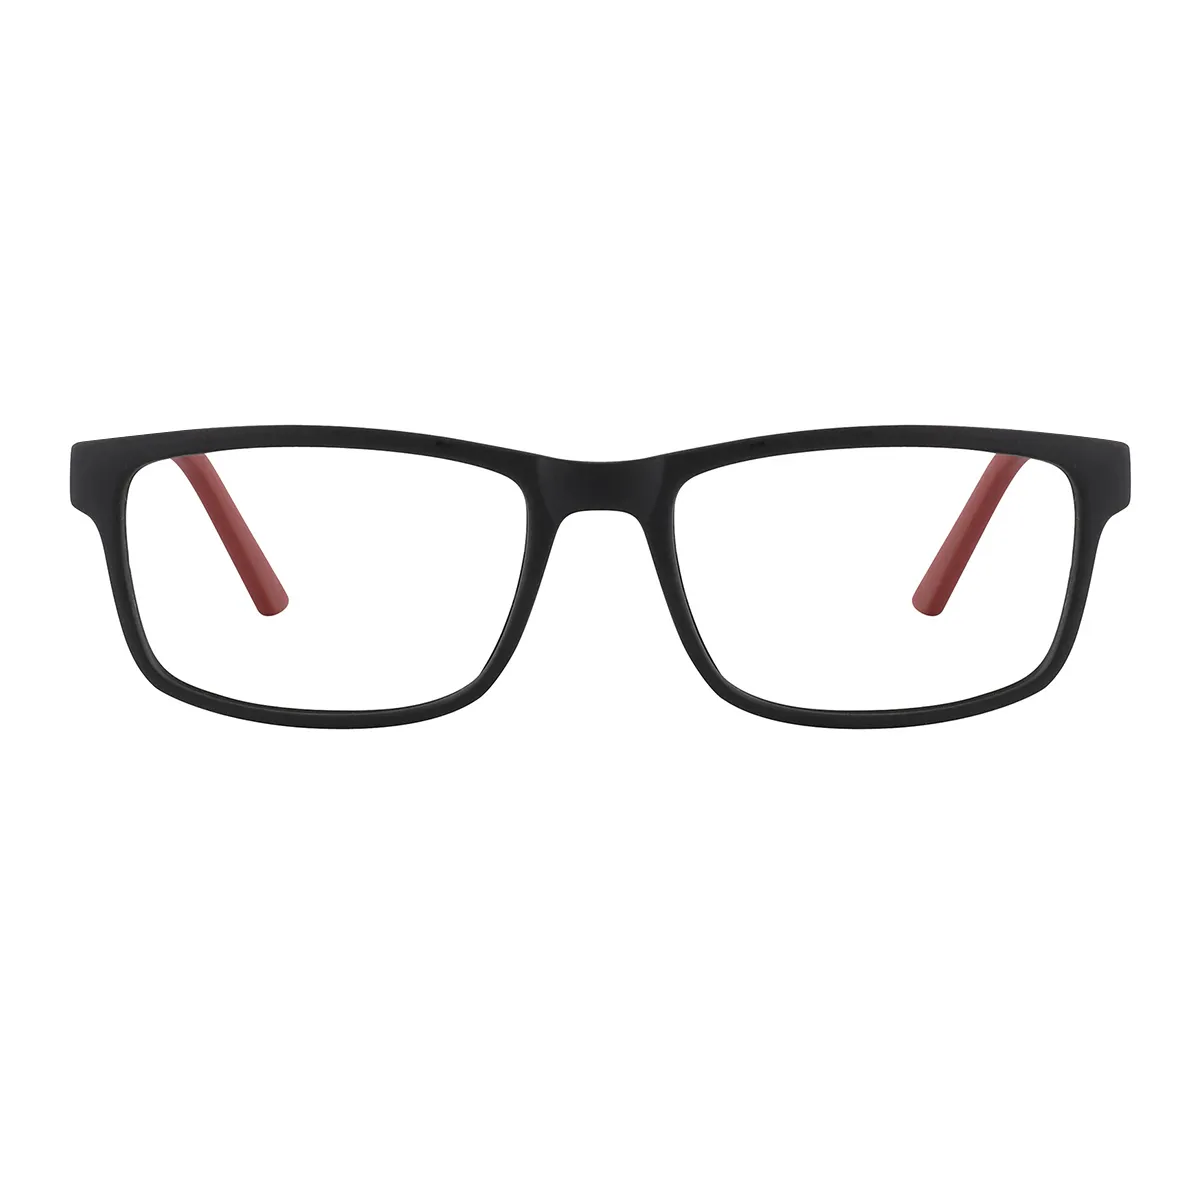 Classic Rectangle Black-Red  Eyeglasses for Women & Men